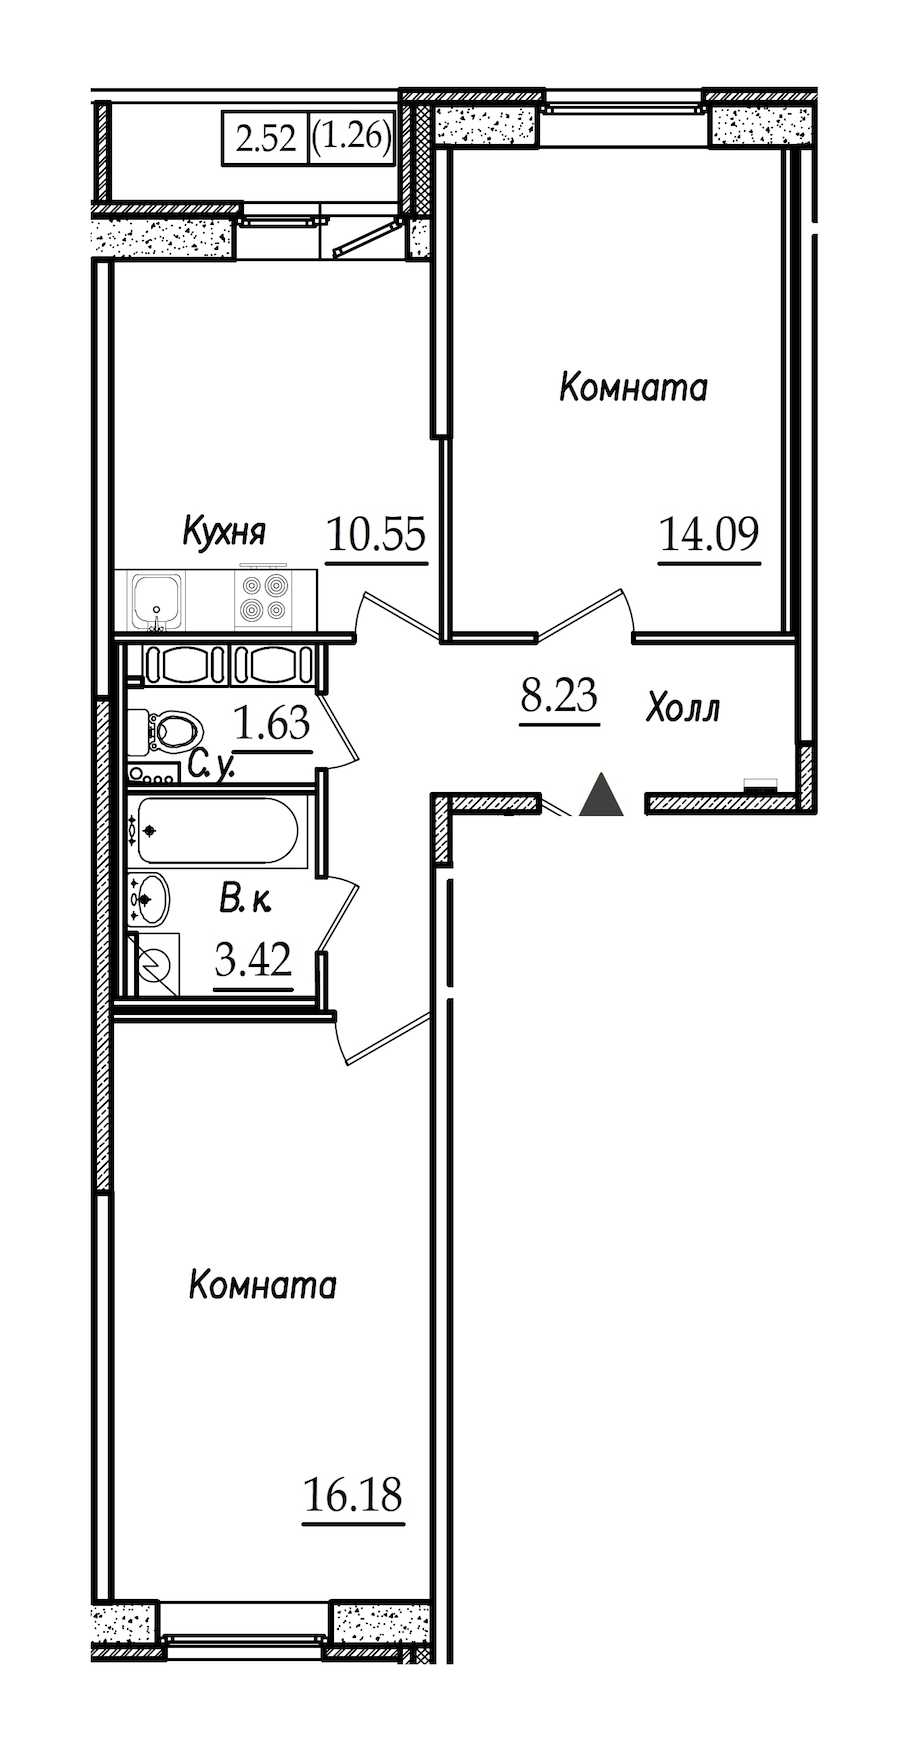 Двухкомнатная квартира в СПб Реновация: площадь 55.36 м2 , этаж: 9 – купить в Санкт-Петербурге